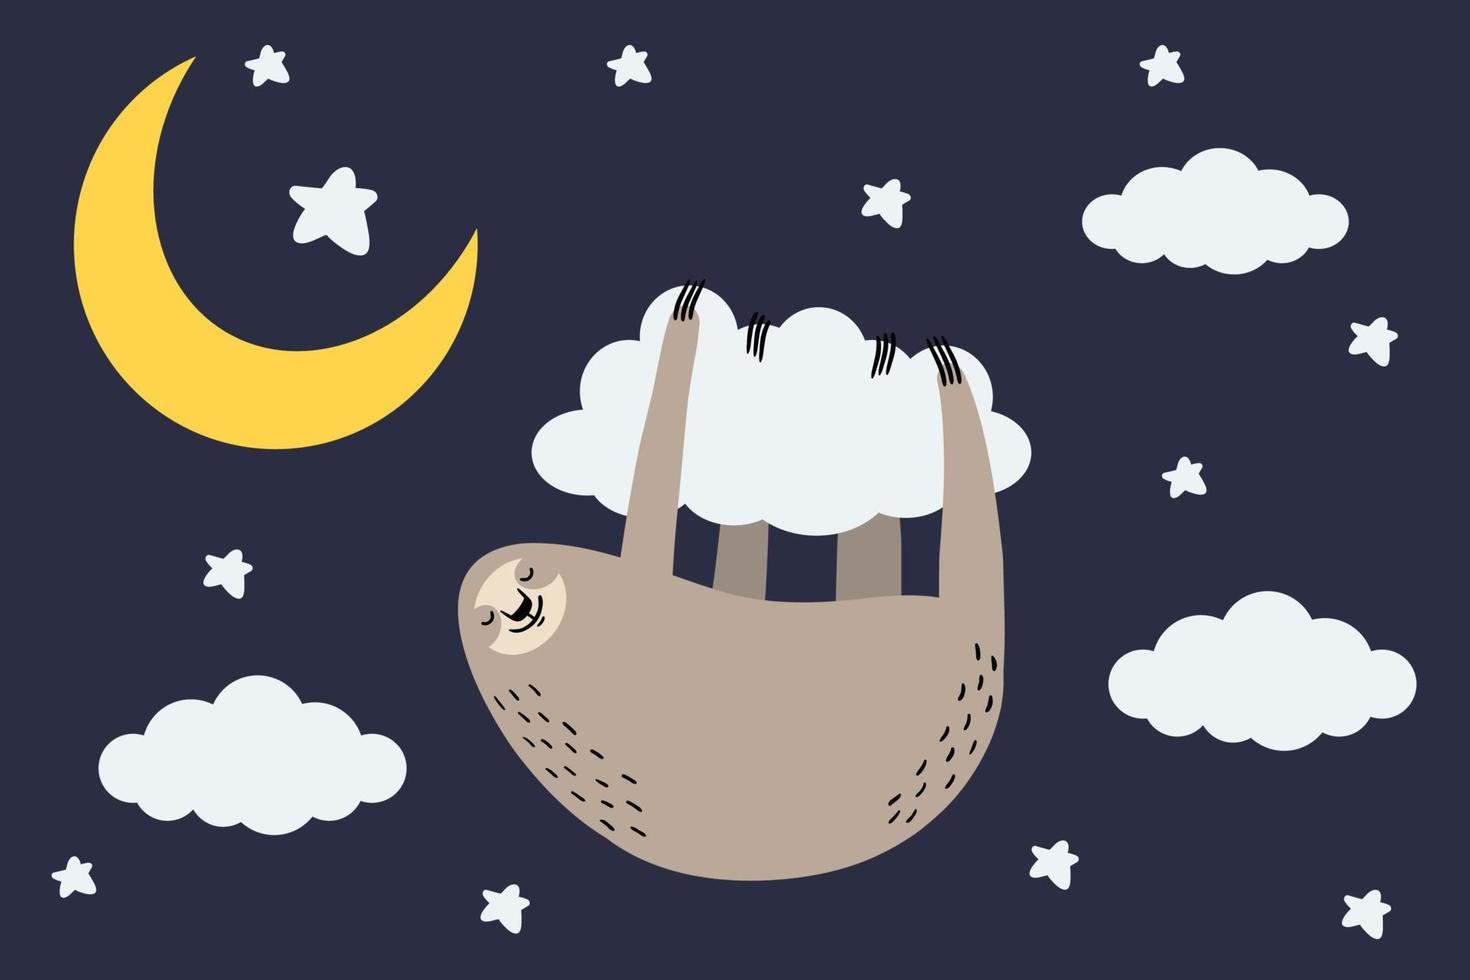 mignon dessin animé paresseux dormant suspendu à un nuage avec des étoiles et un croissant de lune. illustration vectorielle. vecteur